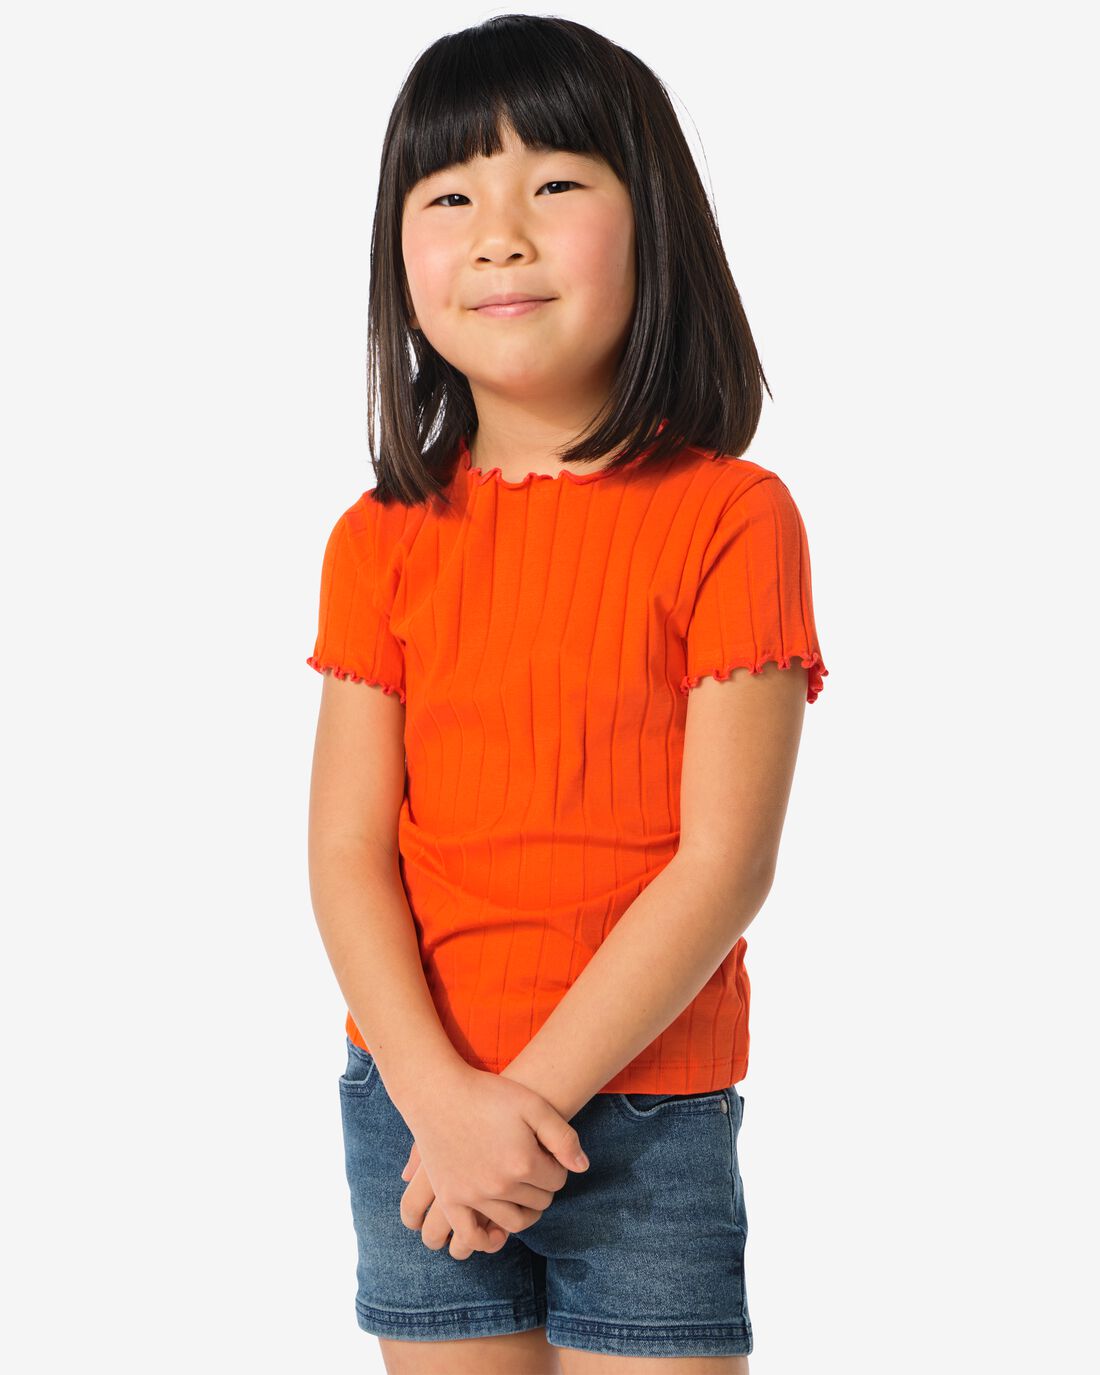 HEMA Kinder T-shirt Met Ribbels Oranje (oranje)